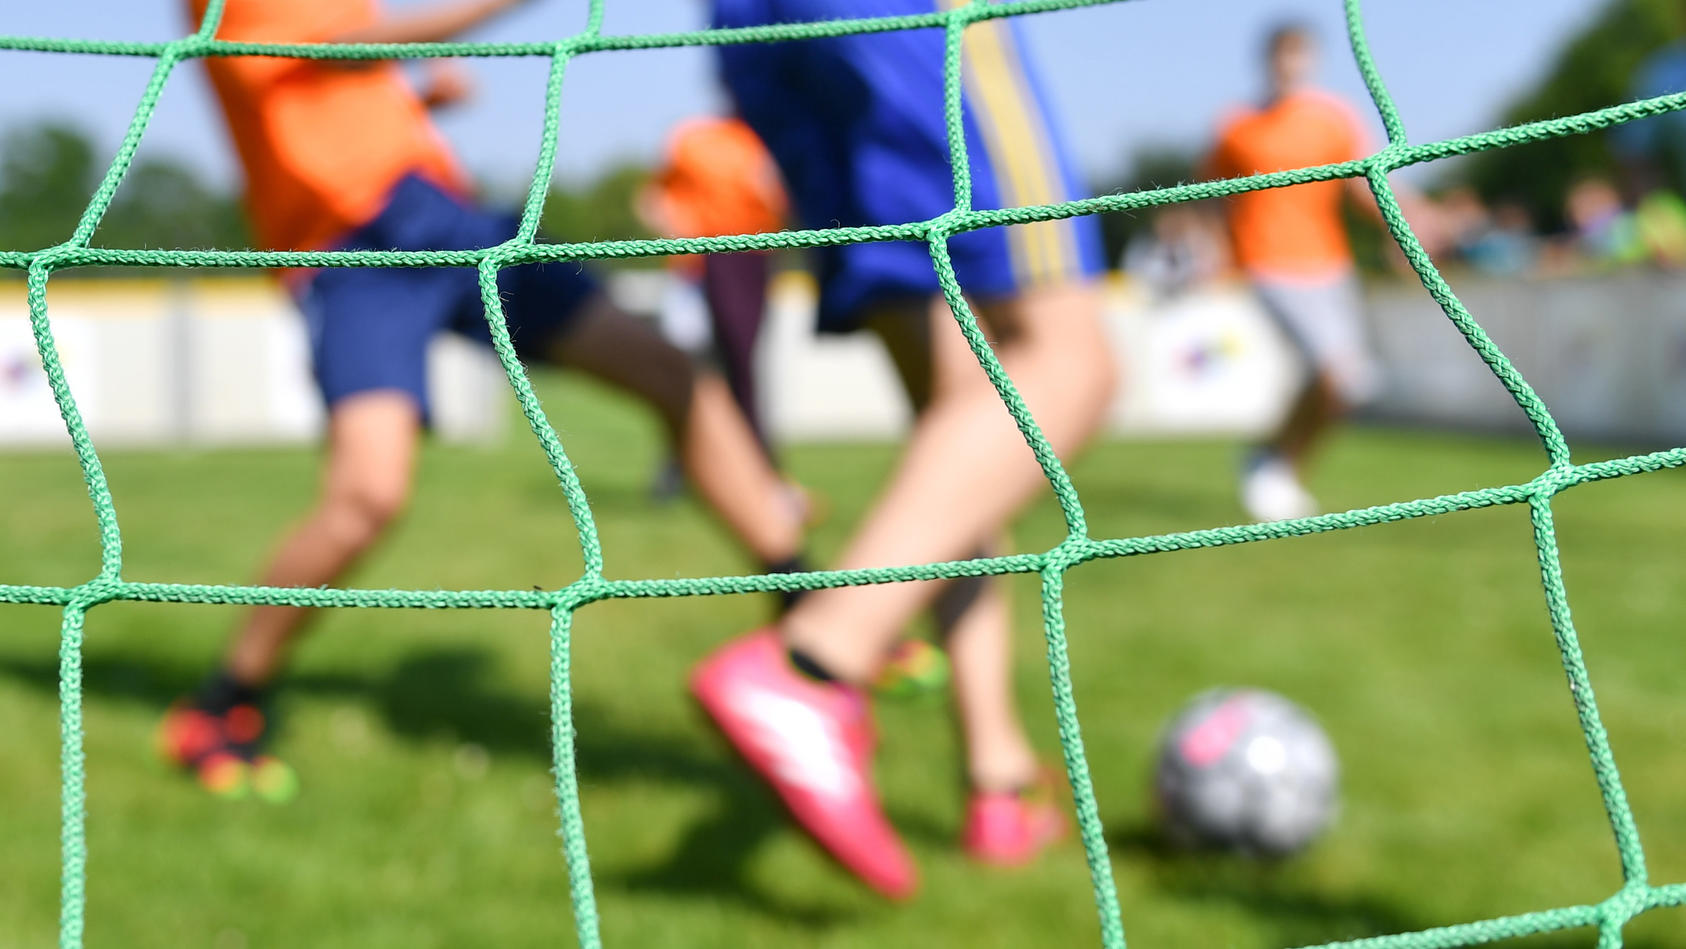 ARCHIV - 05.06.2016, ---: ILLUSTRATION - Kinder spielen auf einem Sportplatz Fußball. Bei der Unabhängigen Kommission zur Aufarbeitung sexuellen Kindesmissbrauchs haben sich seit einem Aufruf im Jahr 2019 rund 100 Menschen mit Missbrauchserfahrungen 